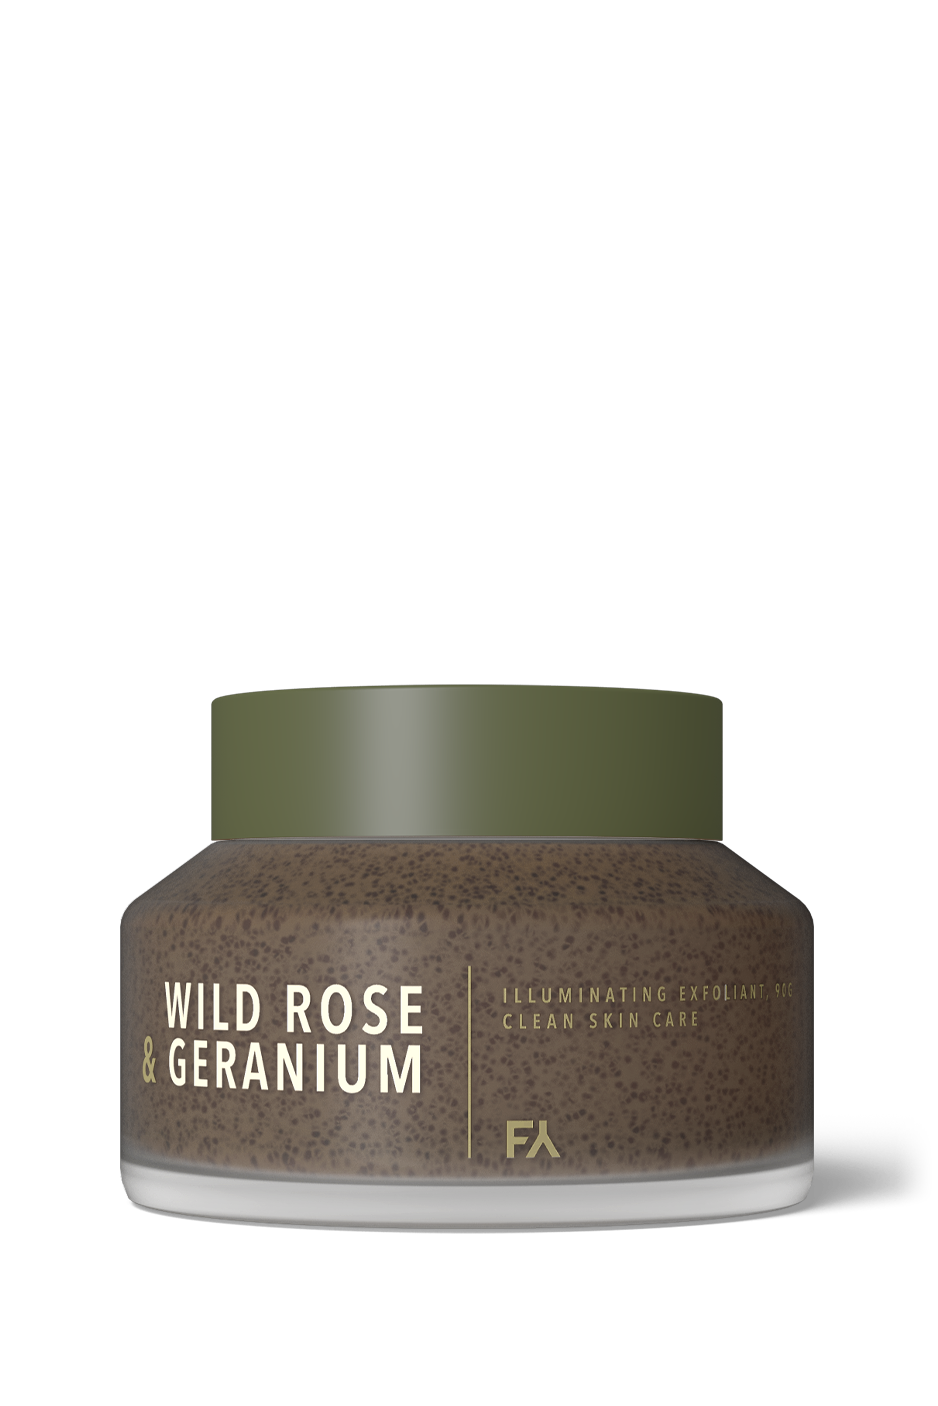 WILD ROSE & GERANIUM | Illuminating Exfoliant